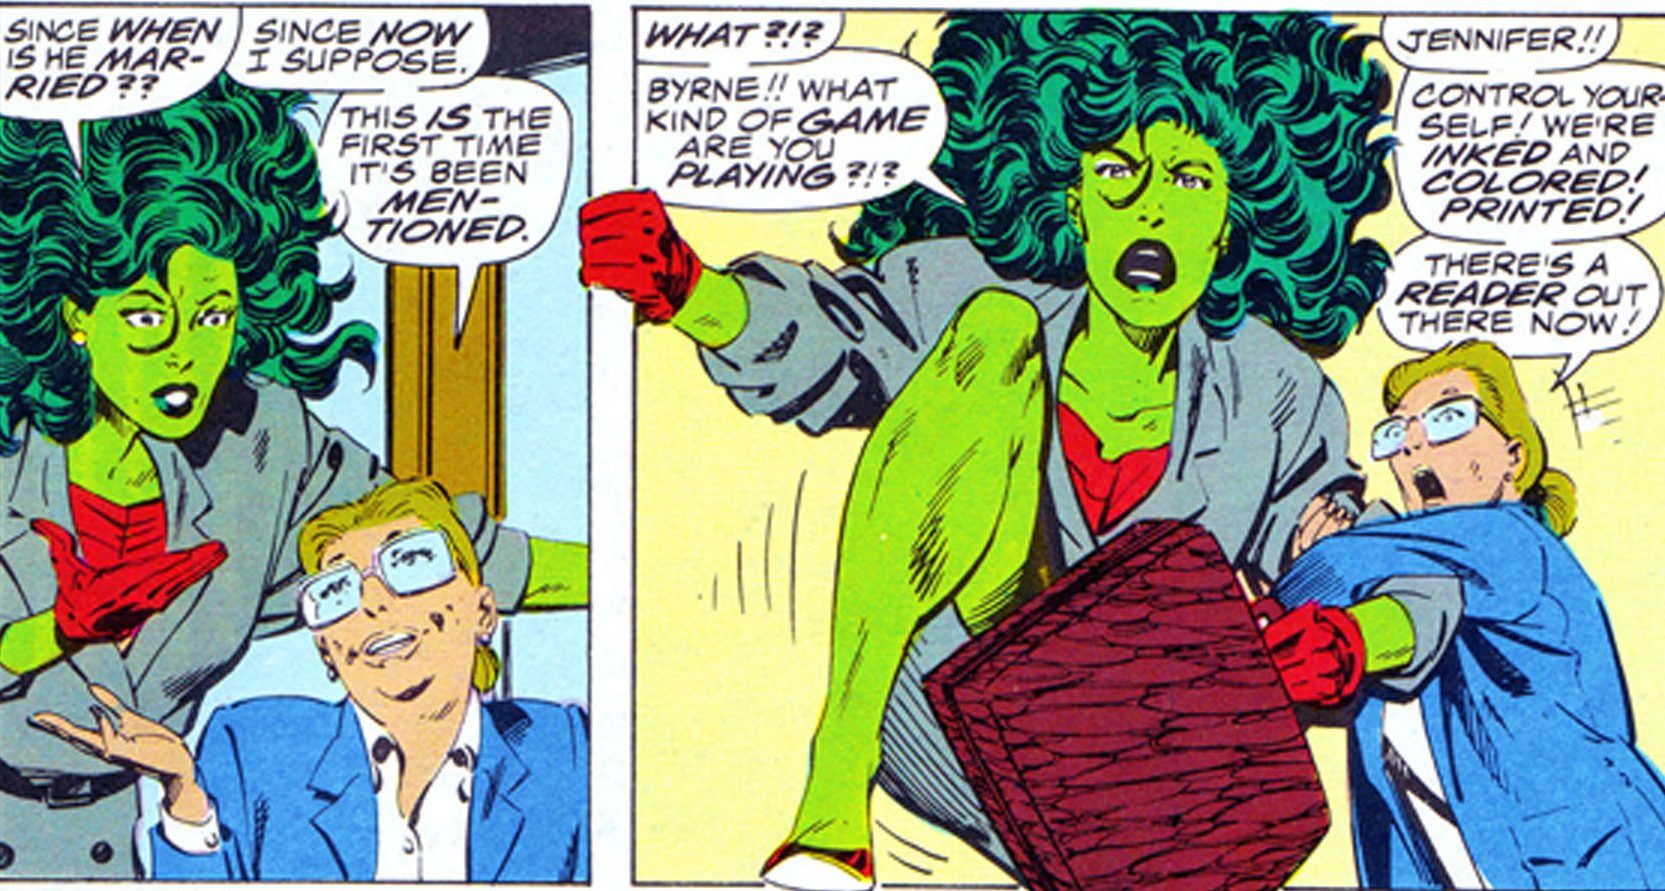 She-Hulk breaks the fourth wall